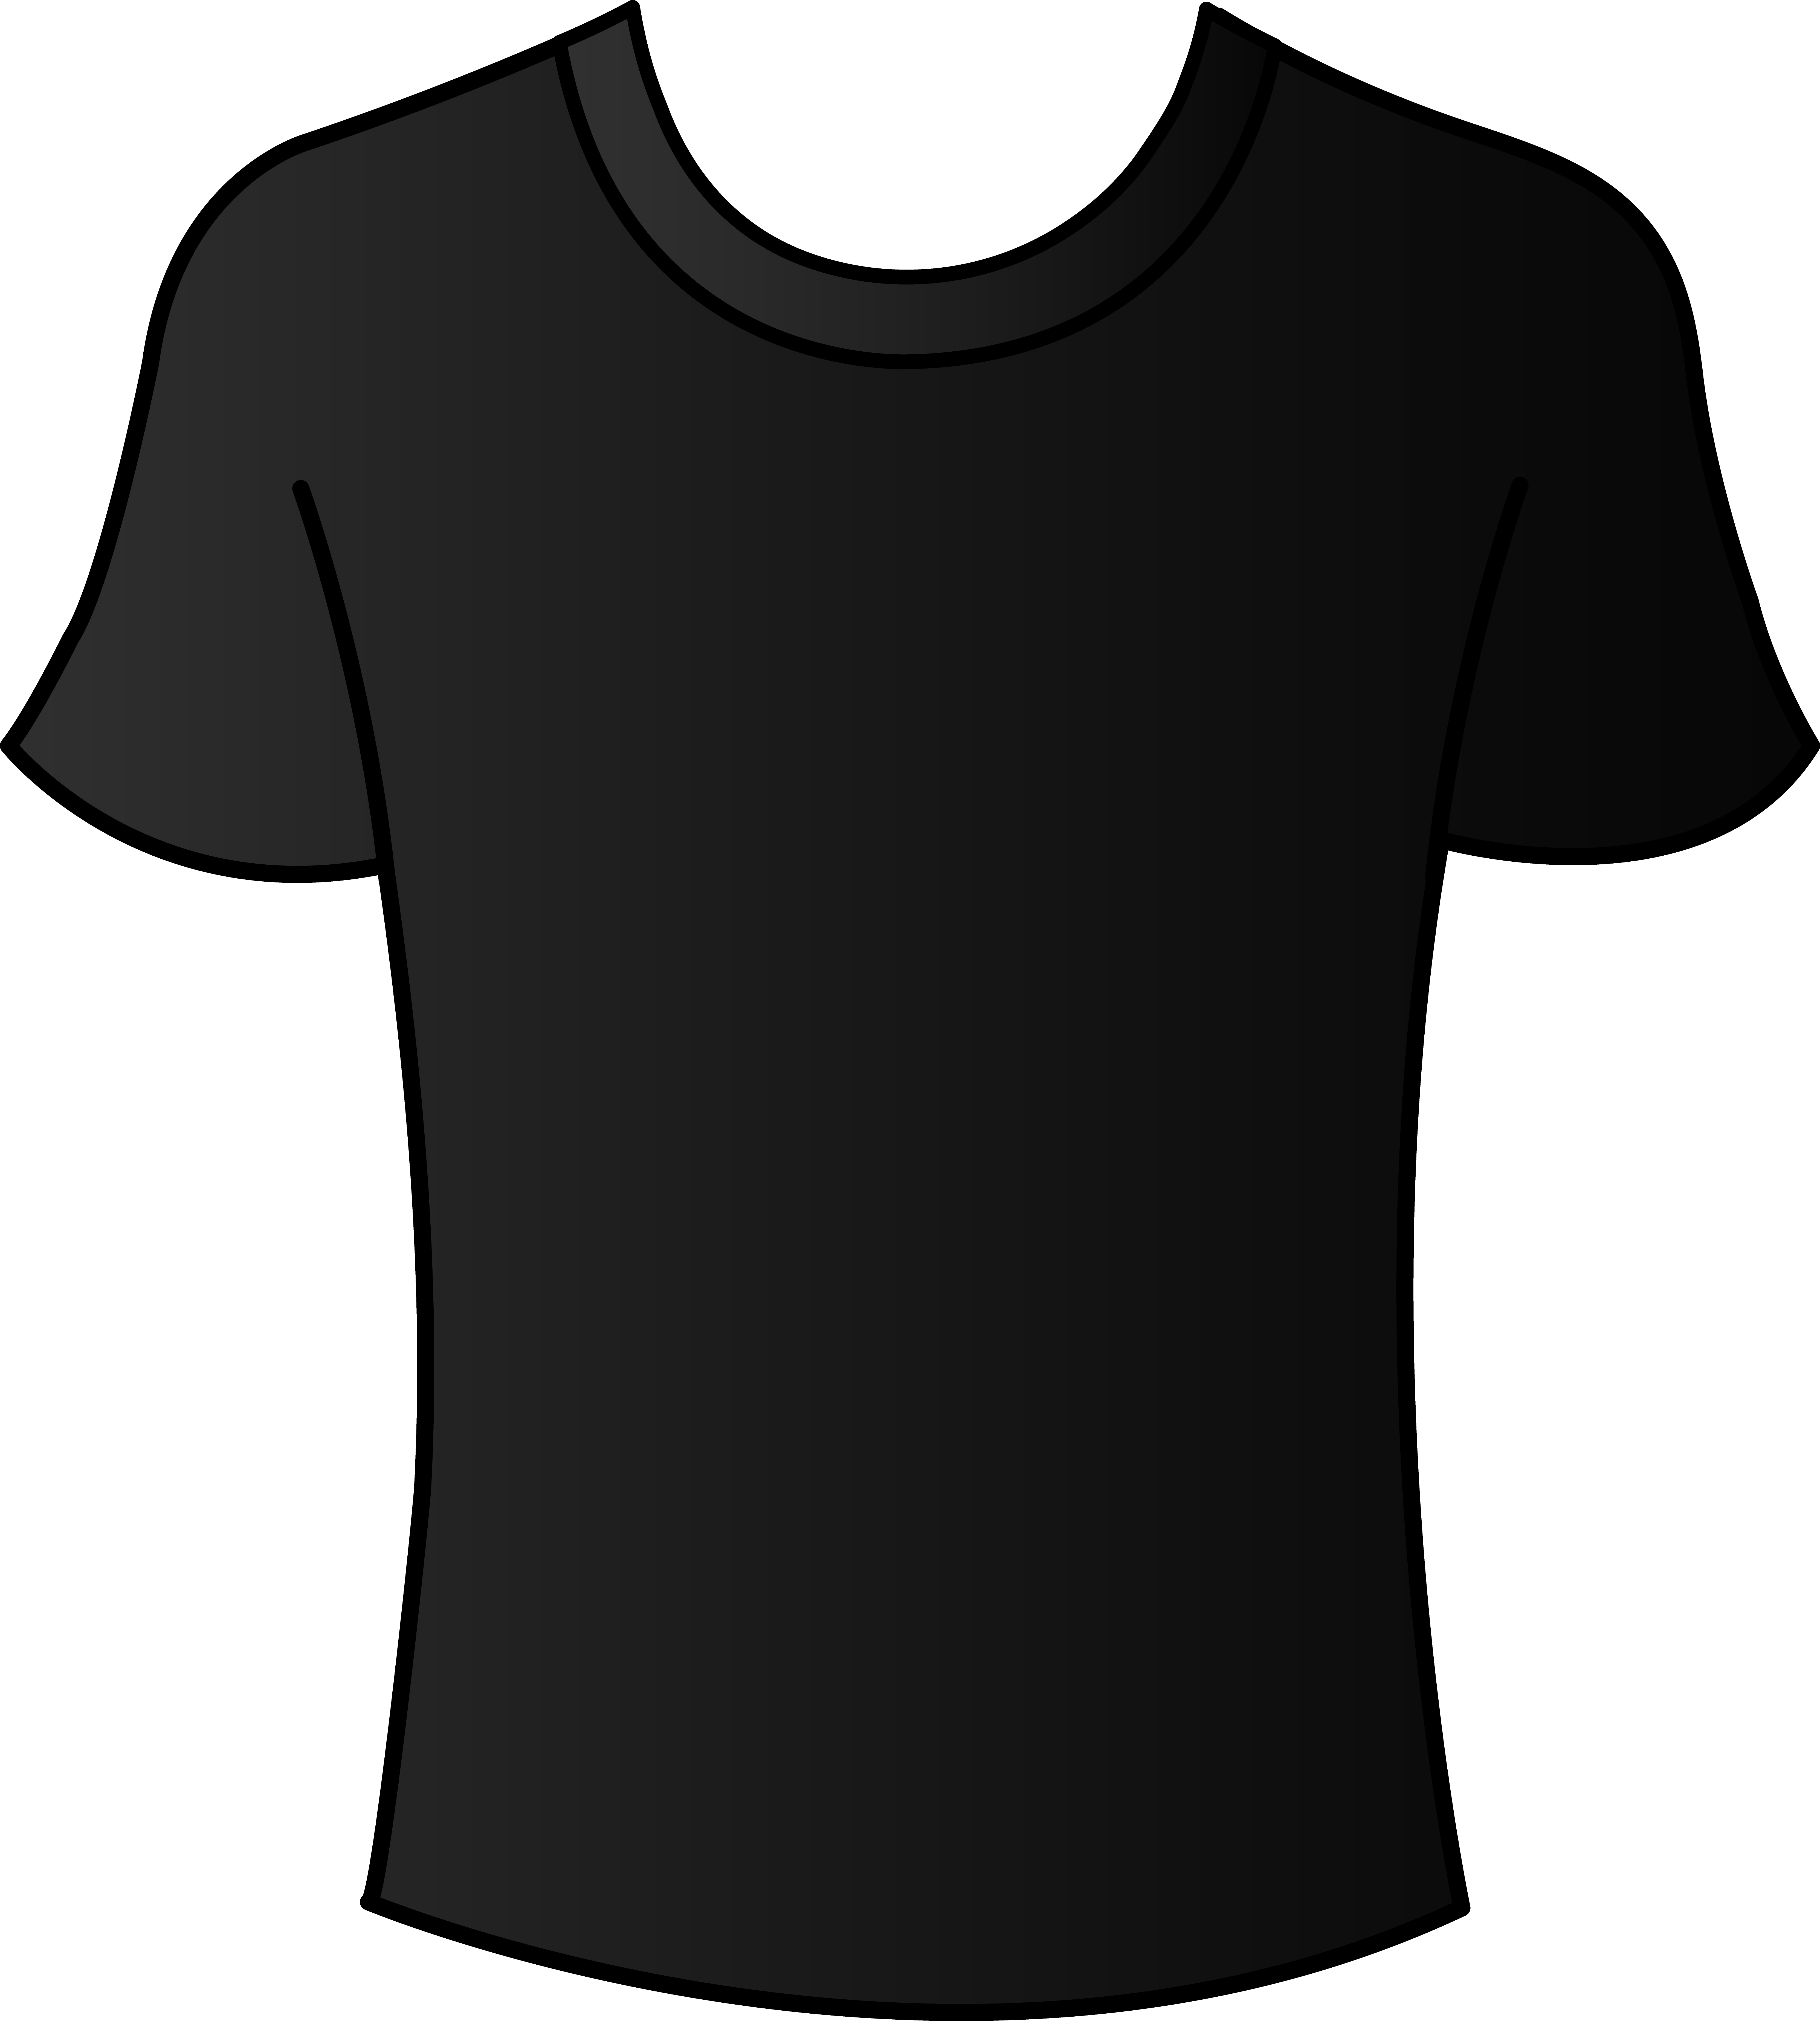 Mens Black T Shirt Template Free Clip Art Men Clothes Clipartmens ...